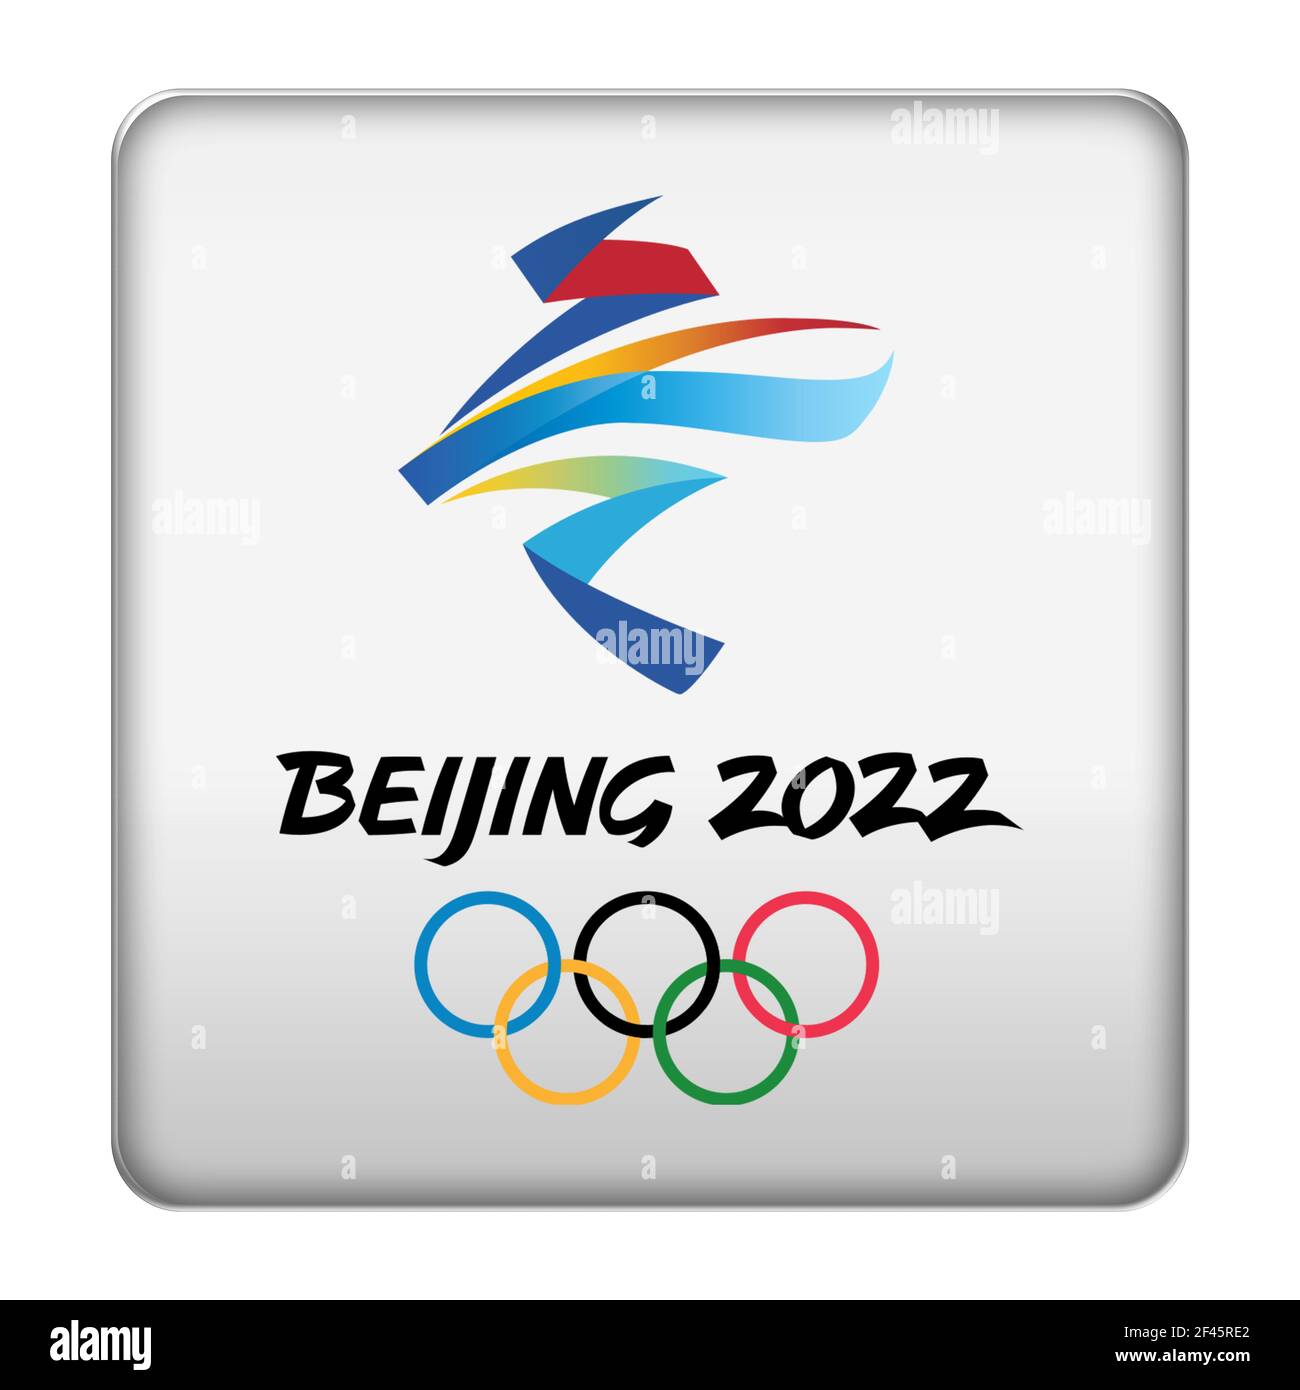 Beijing 2022 in China Stock Photo